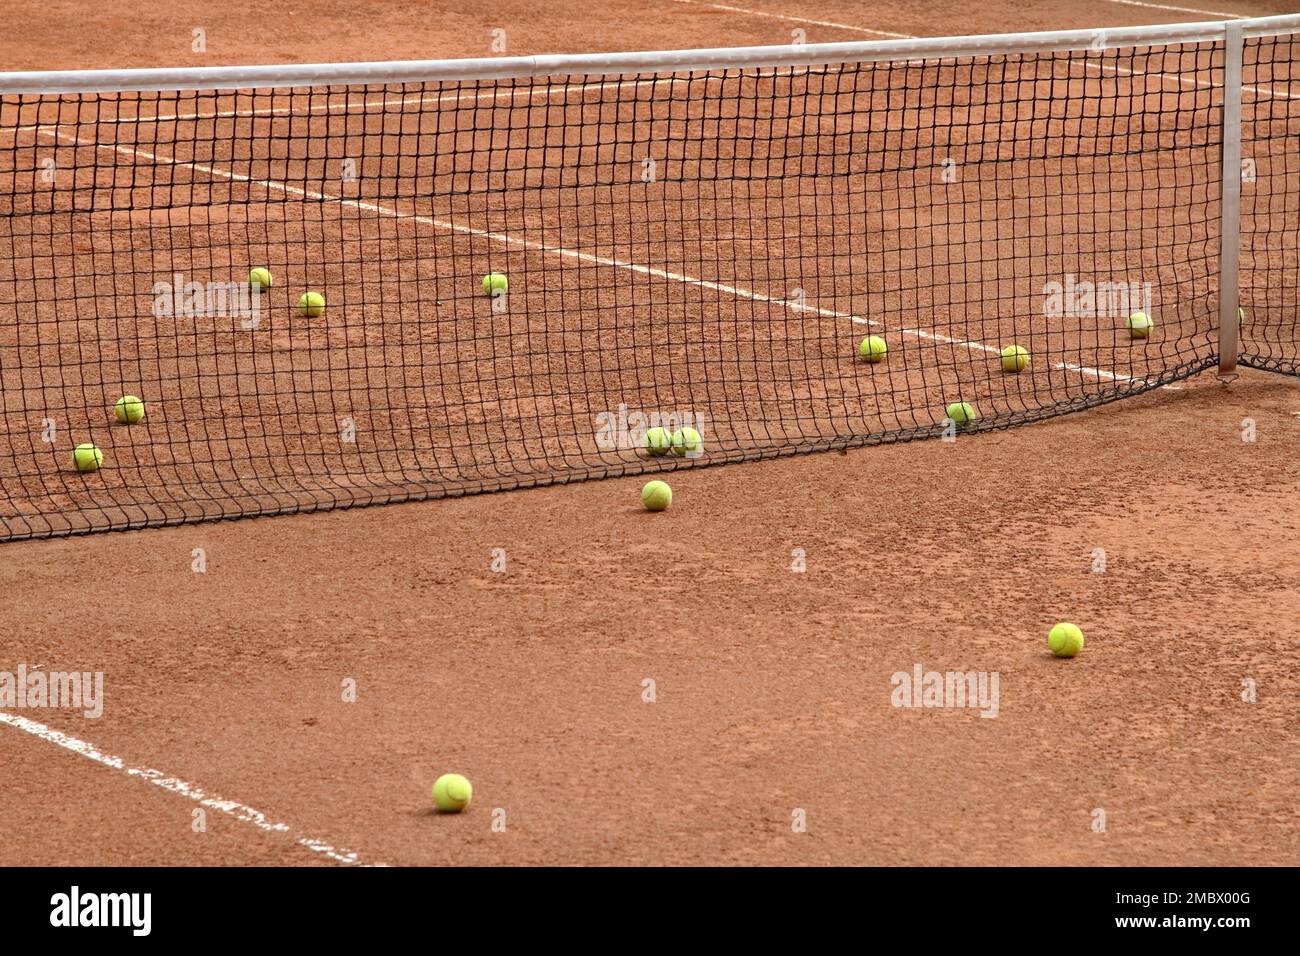 palle da tennis nel campo da tennis in argilla rossa Foto Stock